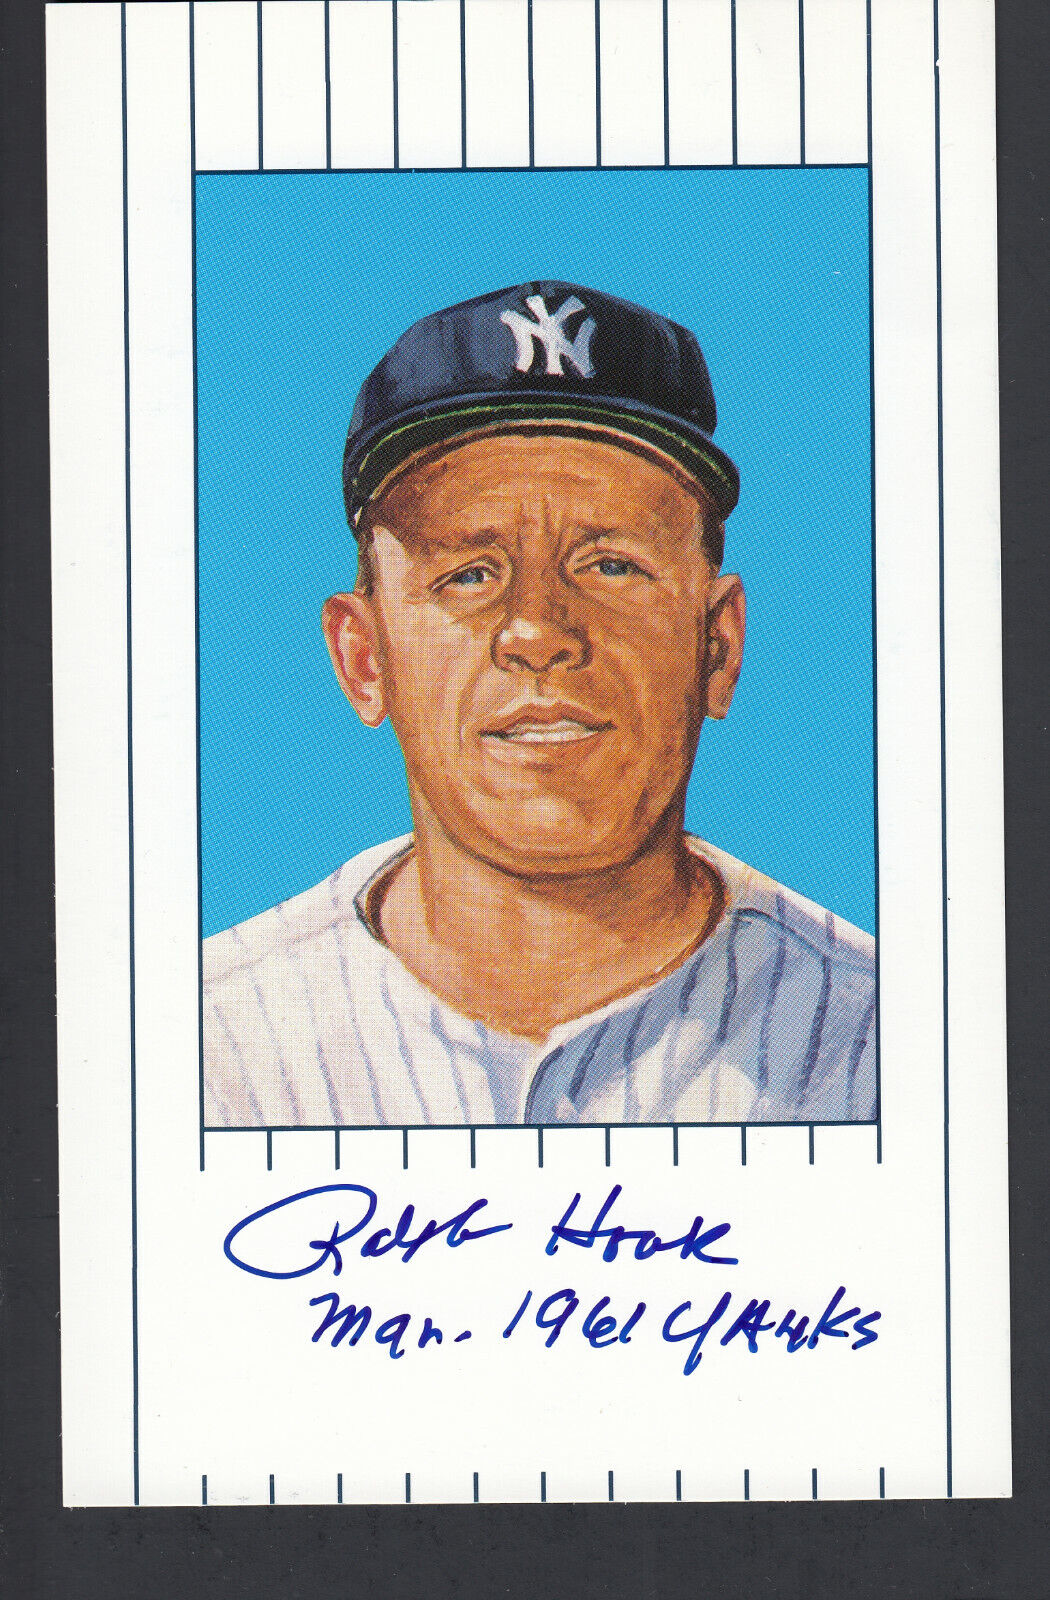 Ralph Houk Autographed Ron Lewis 1961 Yankees Postcard CAS Authentic